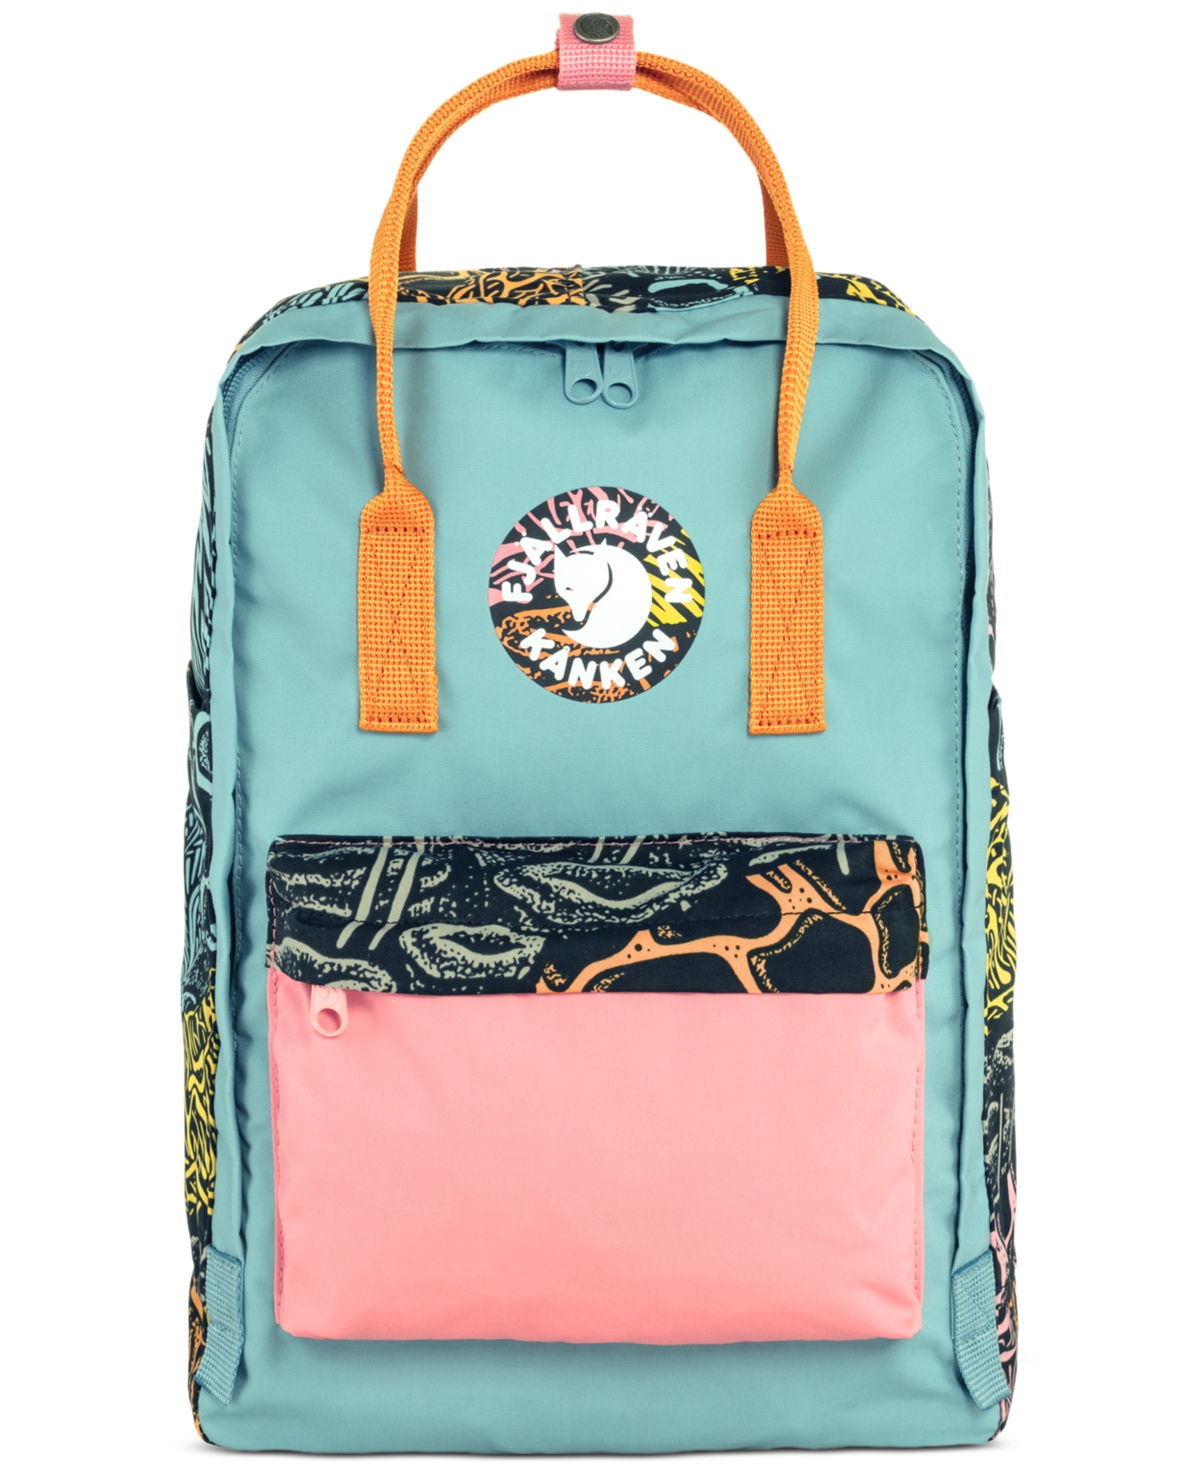 Kanken Art Plus Colorblocked Backpack - Woodlands